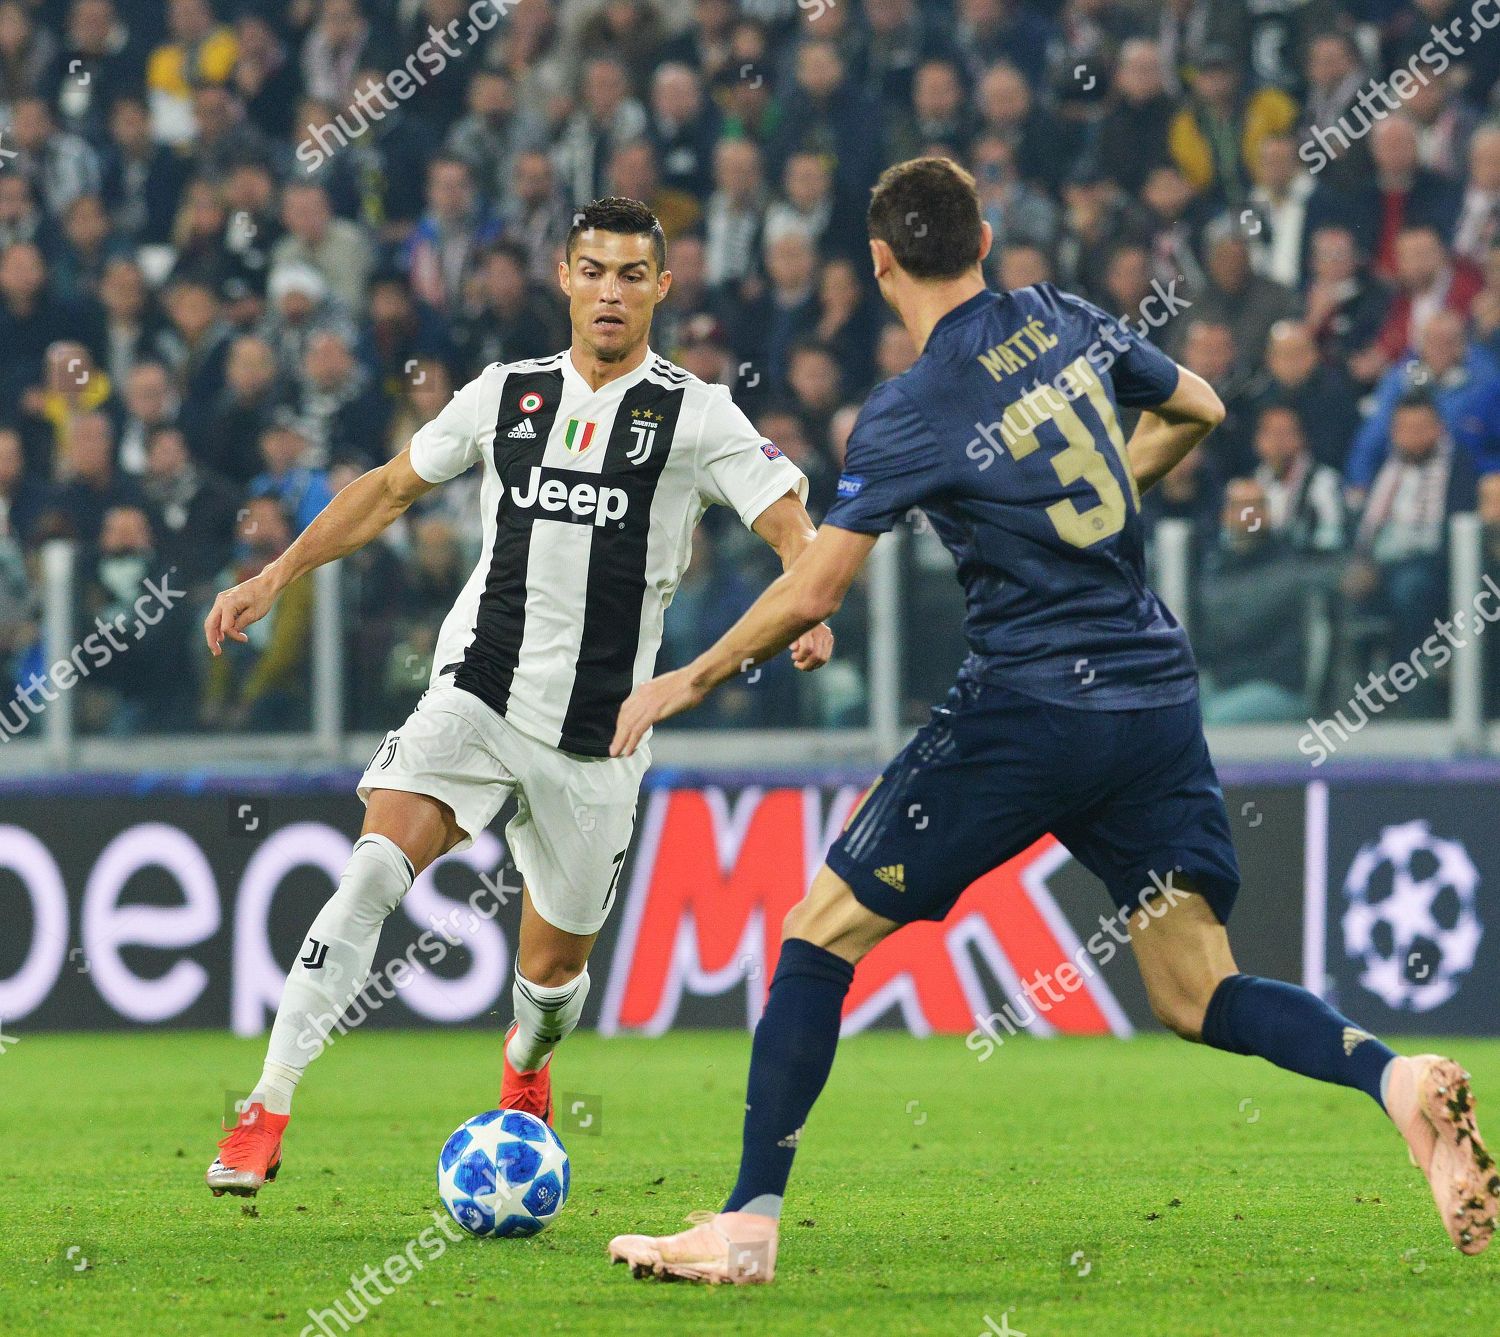 Juventus Cristiano Ronaldo - khâu nối thần kỳ giữa chàng trai và đội bóng ấn tượng nhất tại Serie A. Những hình ảnh tuyệt đẹp của Ronaldo trong màu áo Juventus chắc chắn sẽ khiến bạn phải ngỡ ngàng!